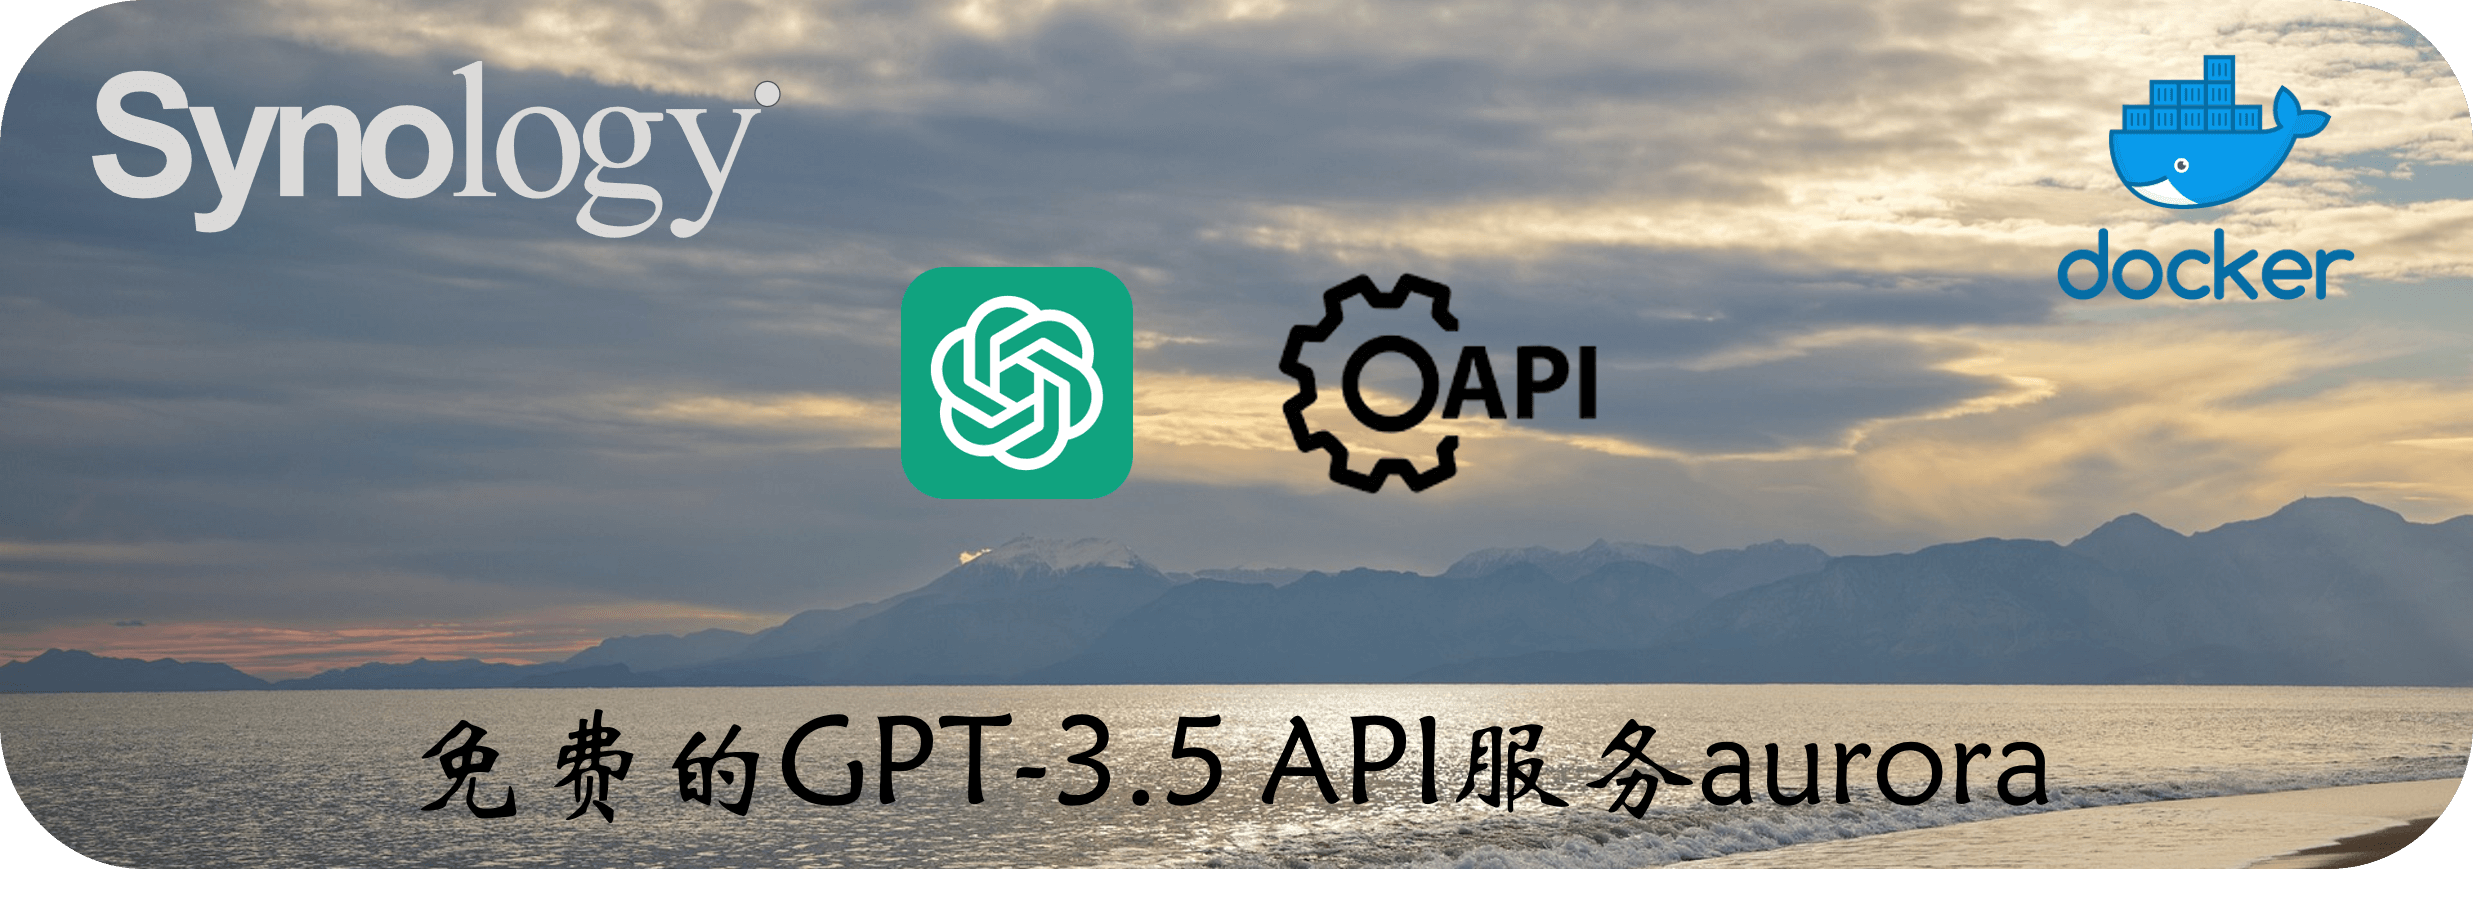 免费的GPT-3.5 API服务aurora